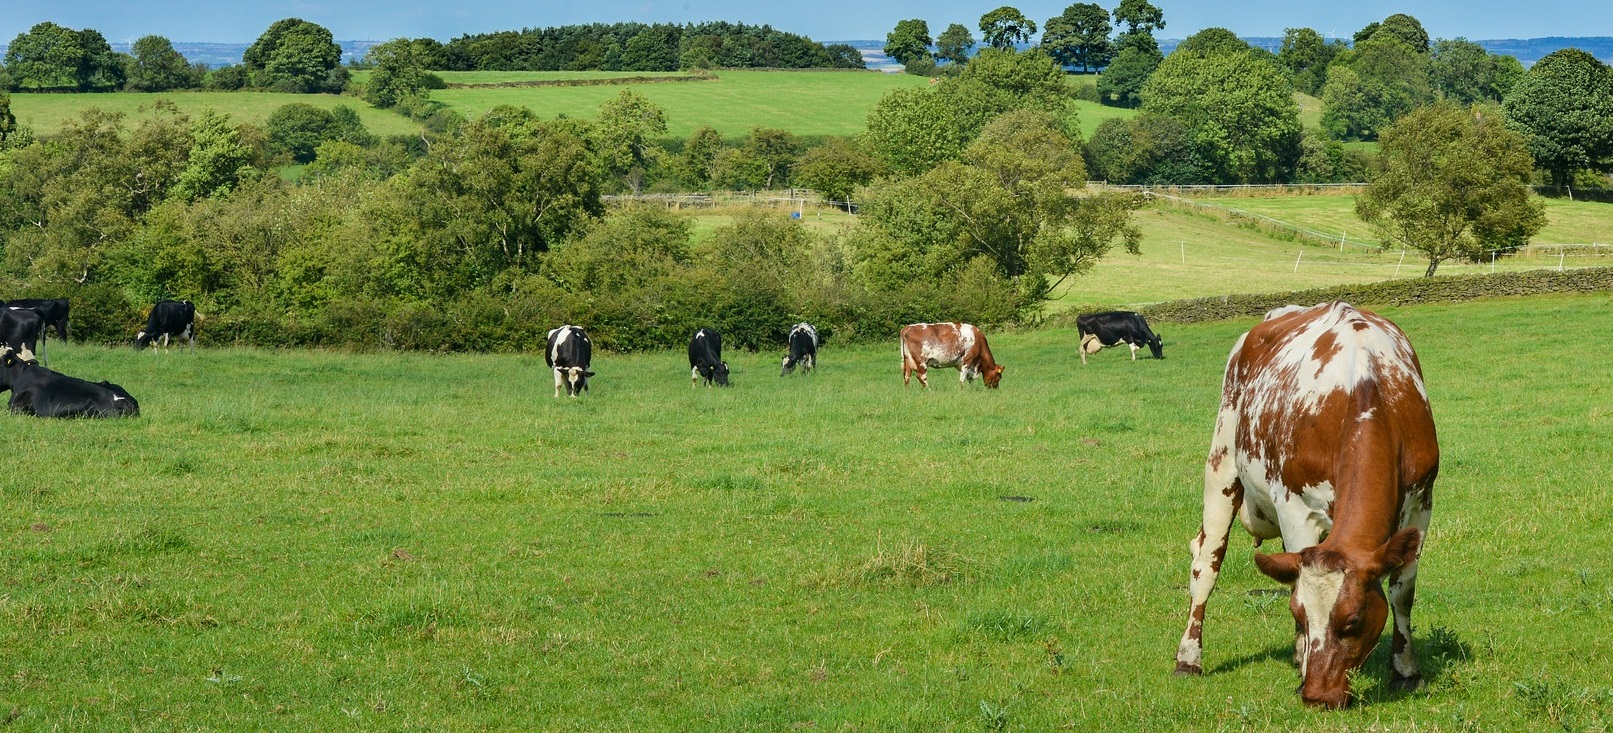 dairy herd grazing grass